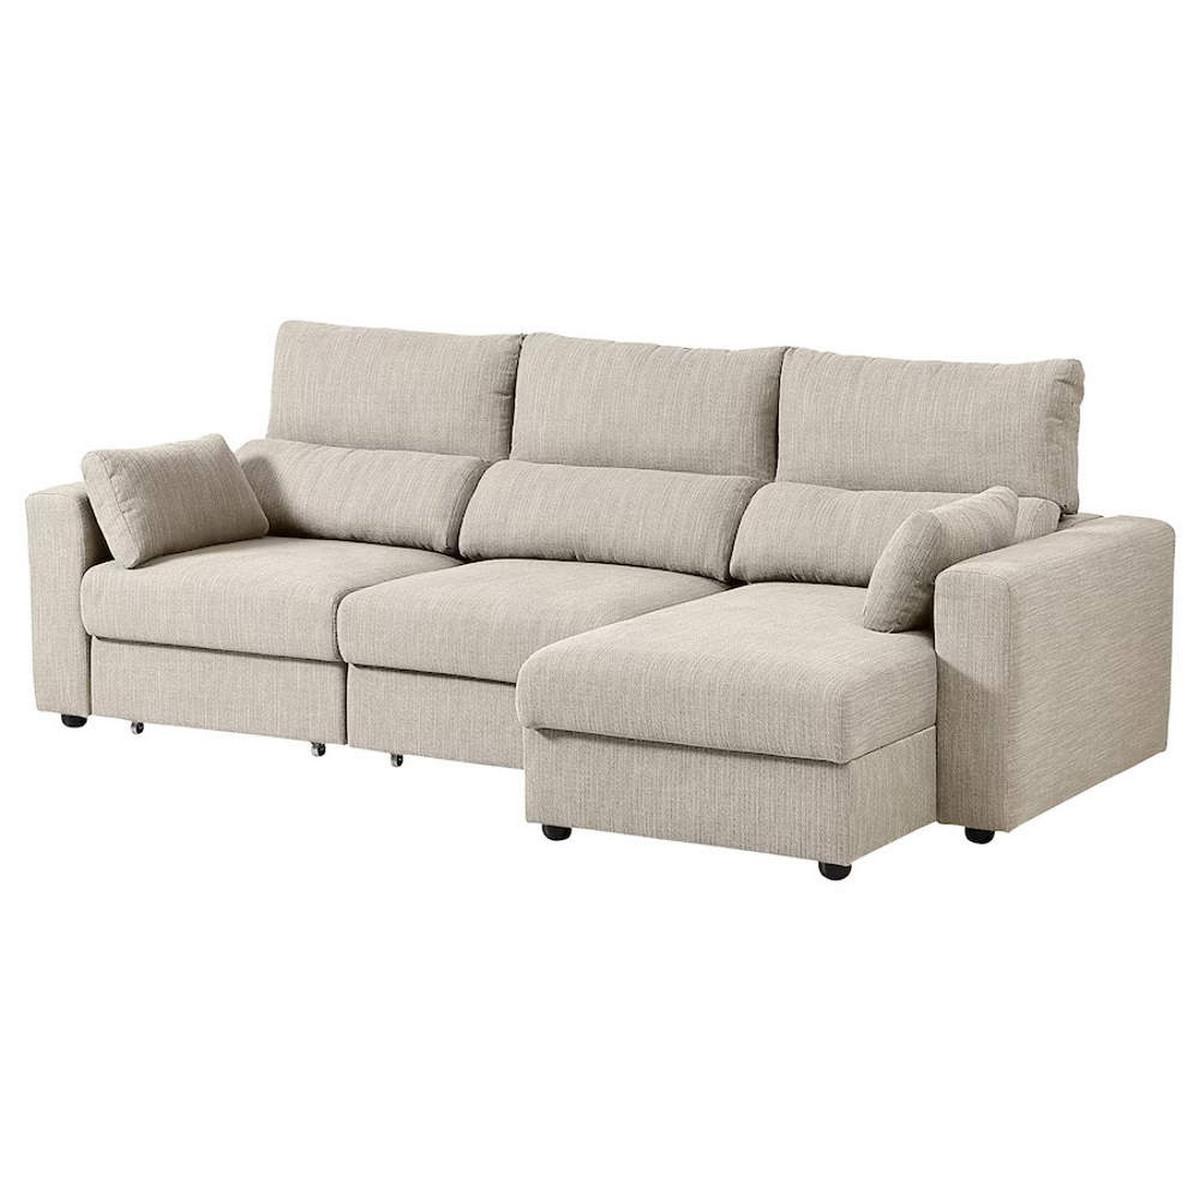 El sofá rebajado es el modelo ESKILSTUNA, a la venta en Ikea.